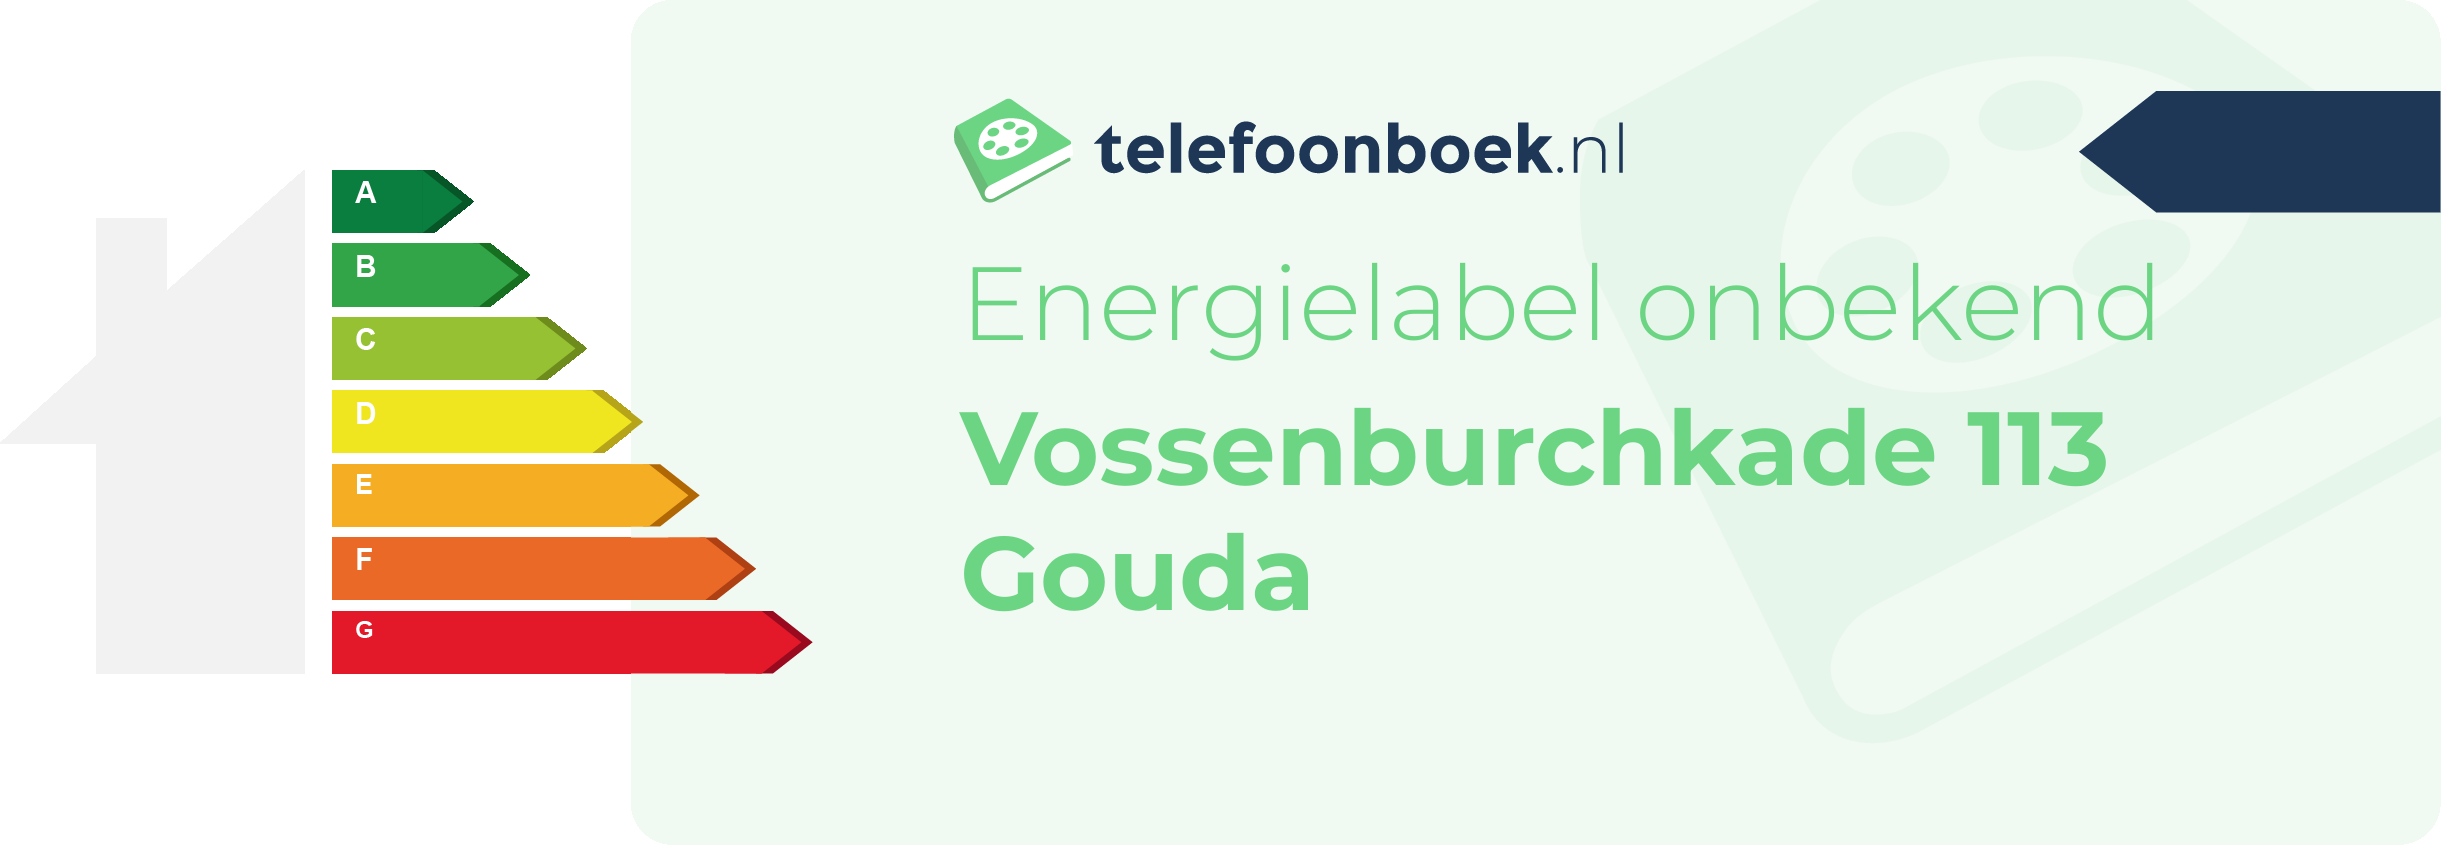 Energielabel Vossenburchkade 113 Gouda